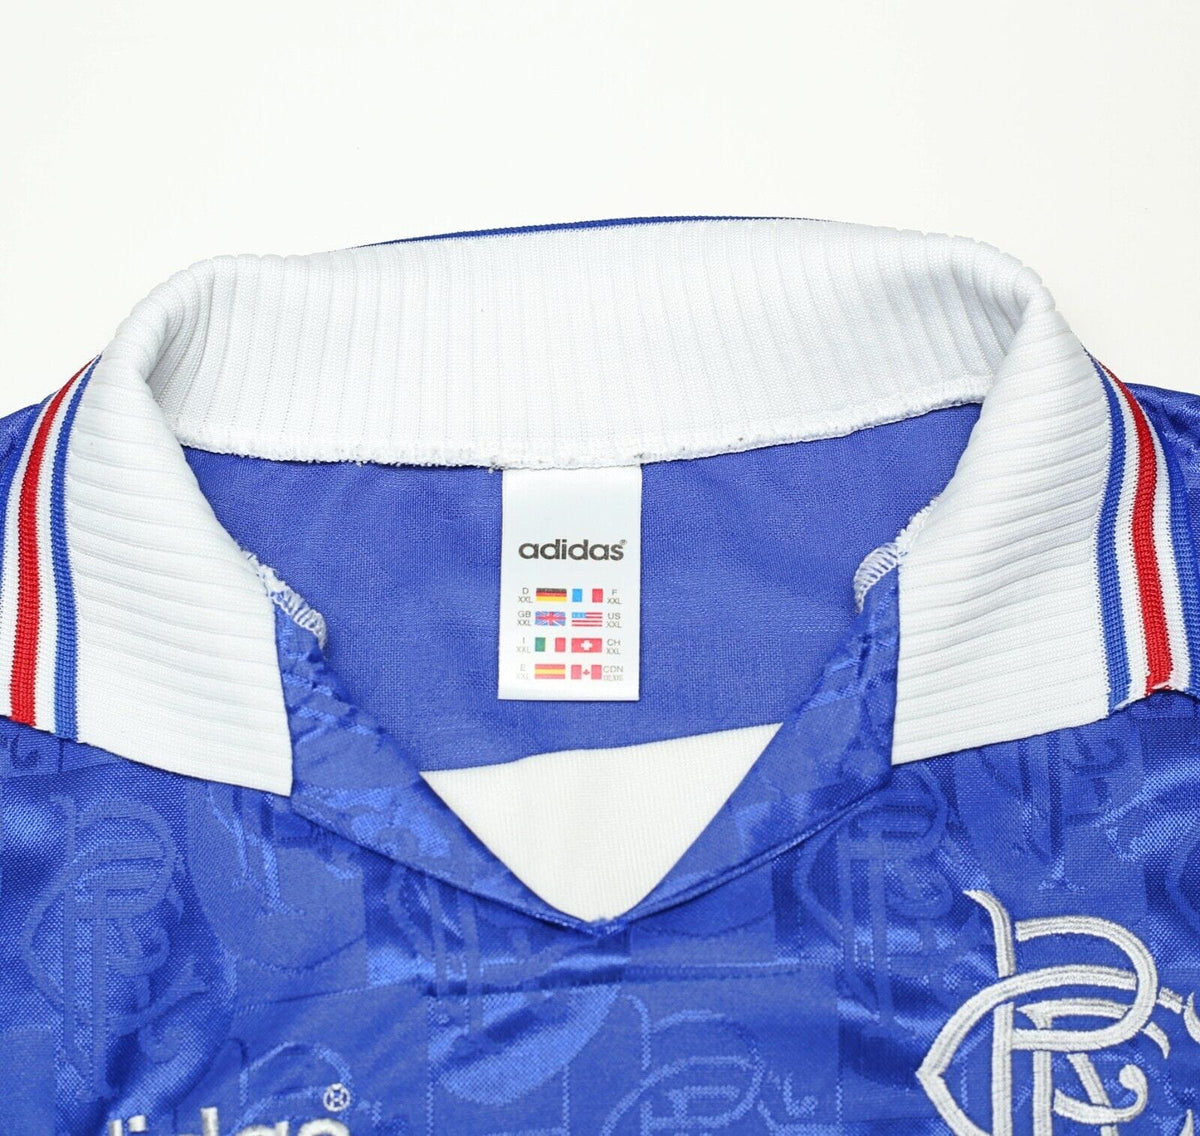 1996-97 Rangers adidas Home Shirt L 014186